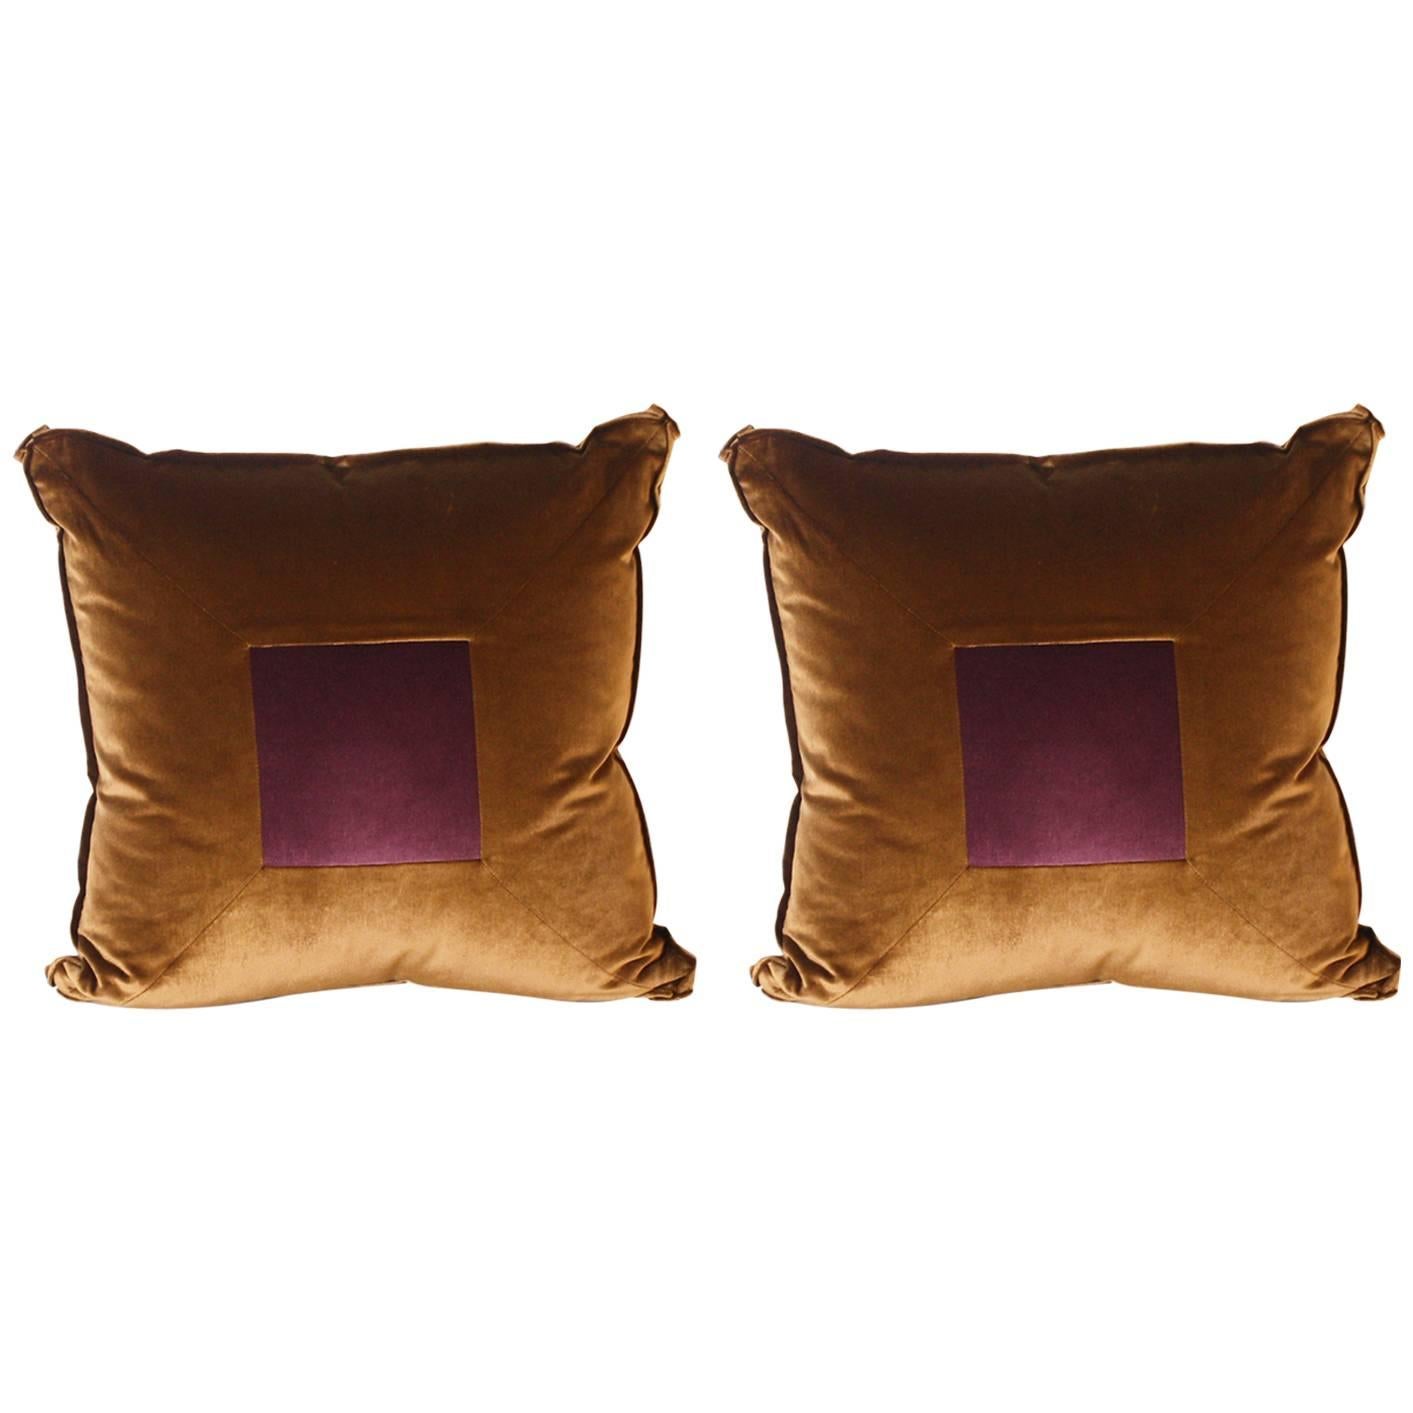 Pair of Two Square Pillows Upholstered in Kravet Velvet